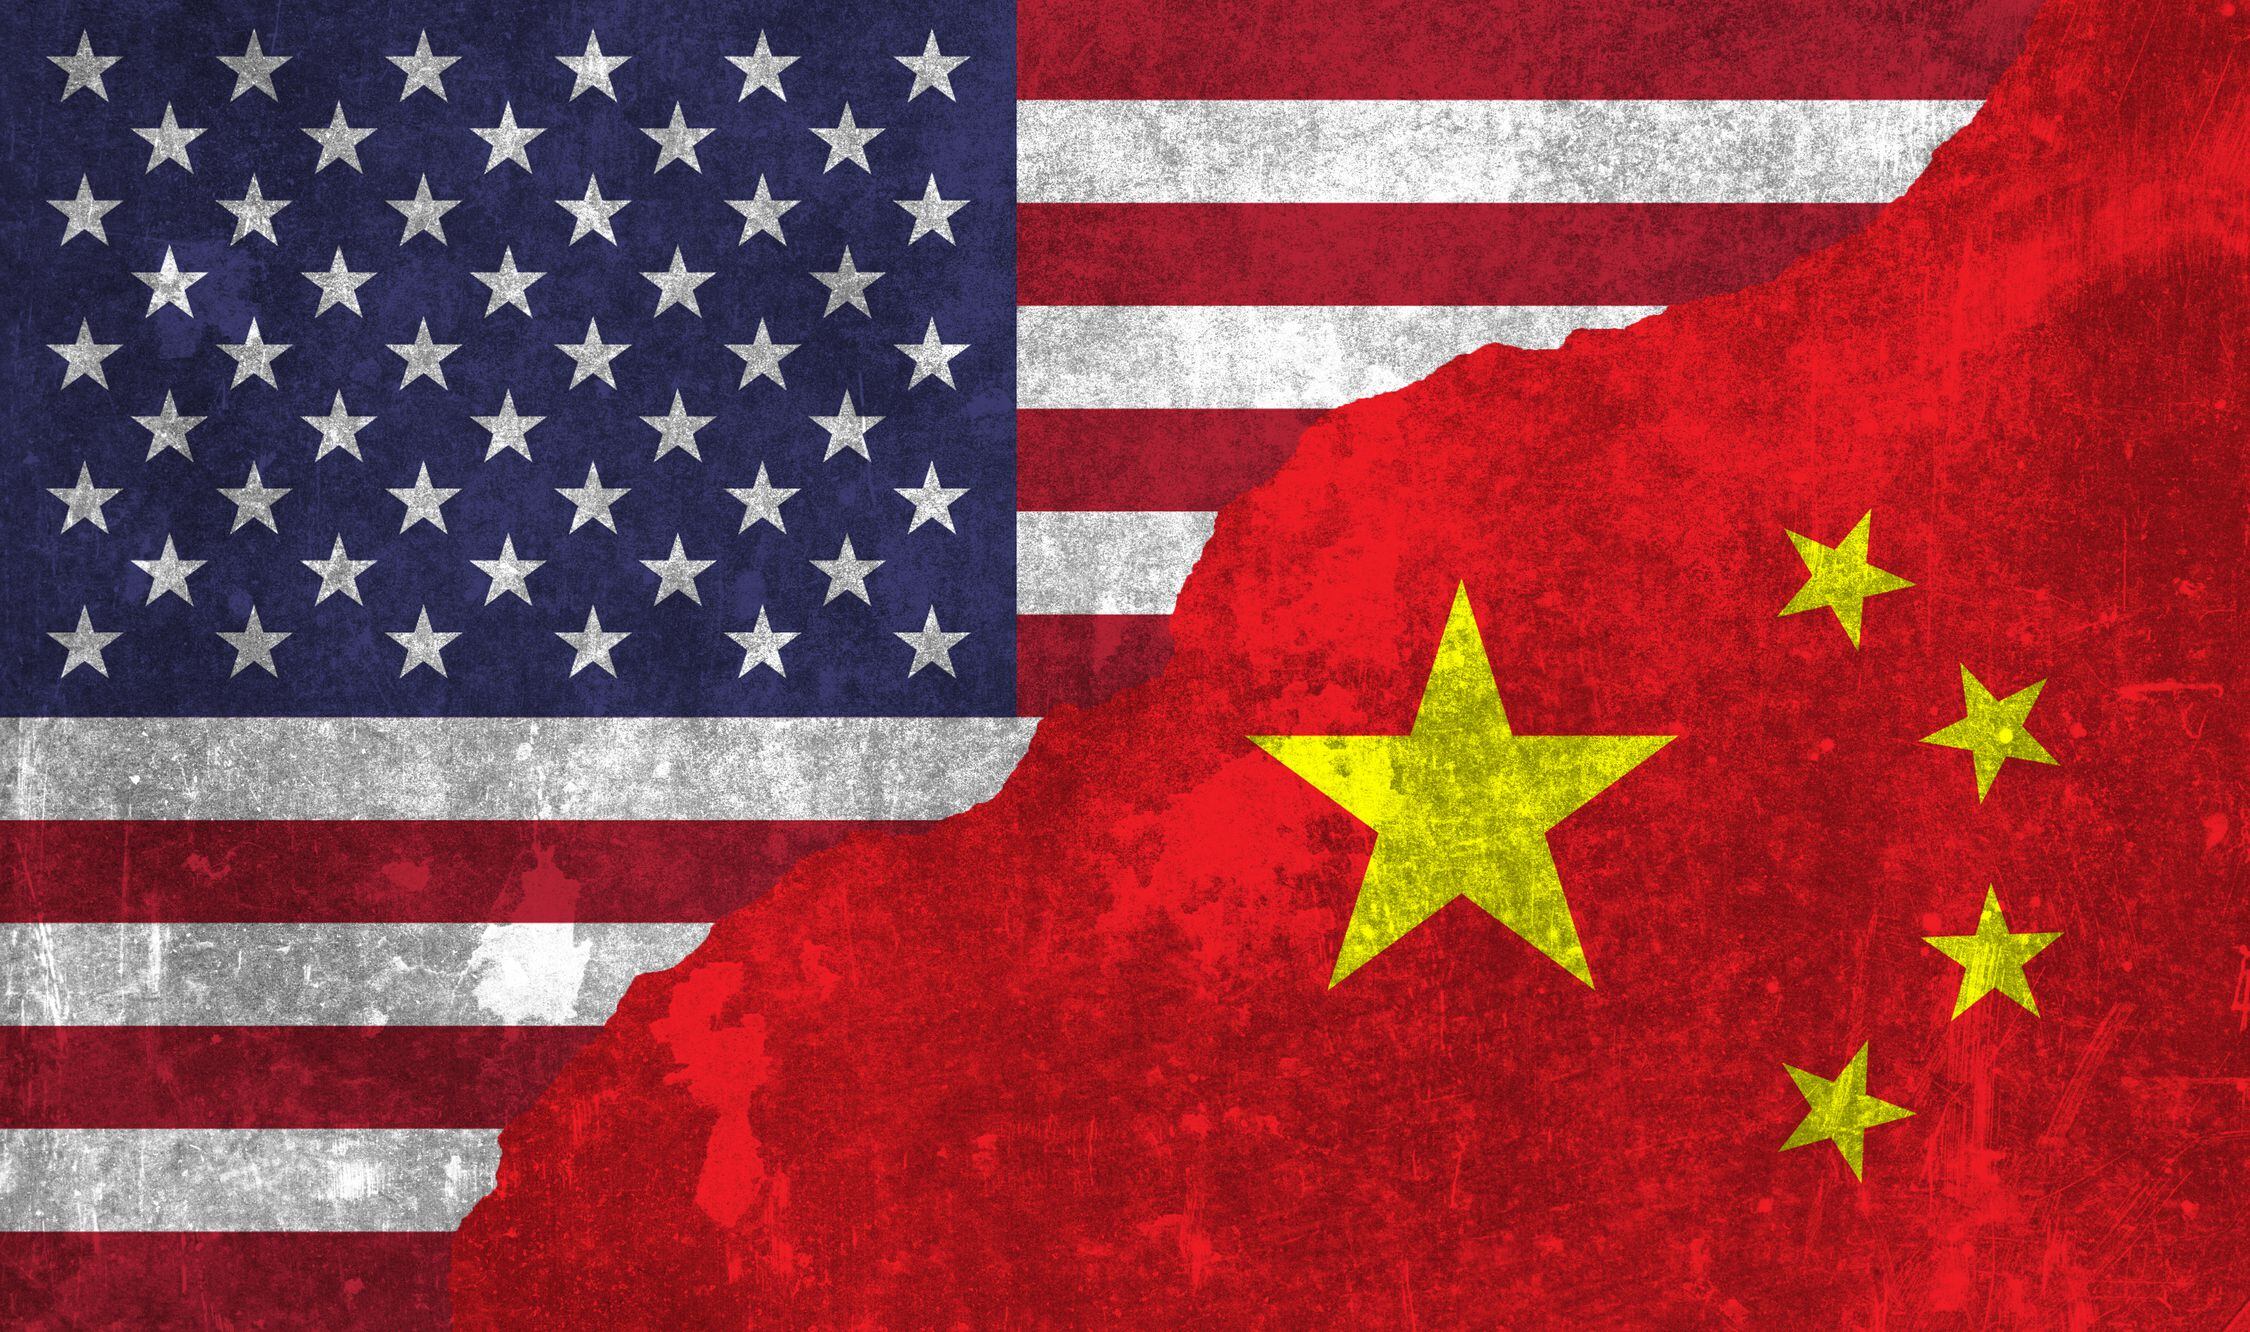 pekín tildó de “hipócritas” la cooperación de ee.uu. sobre comercio entre china y rusia